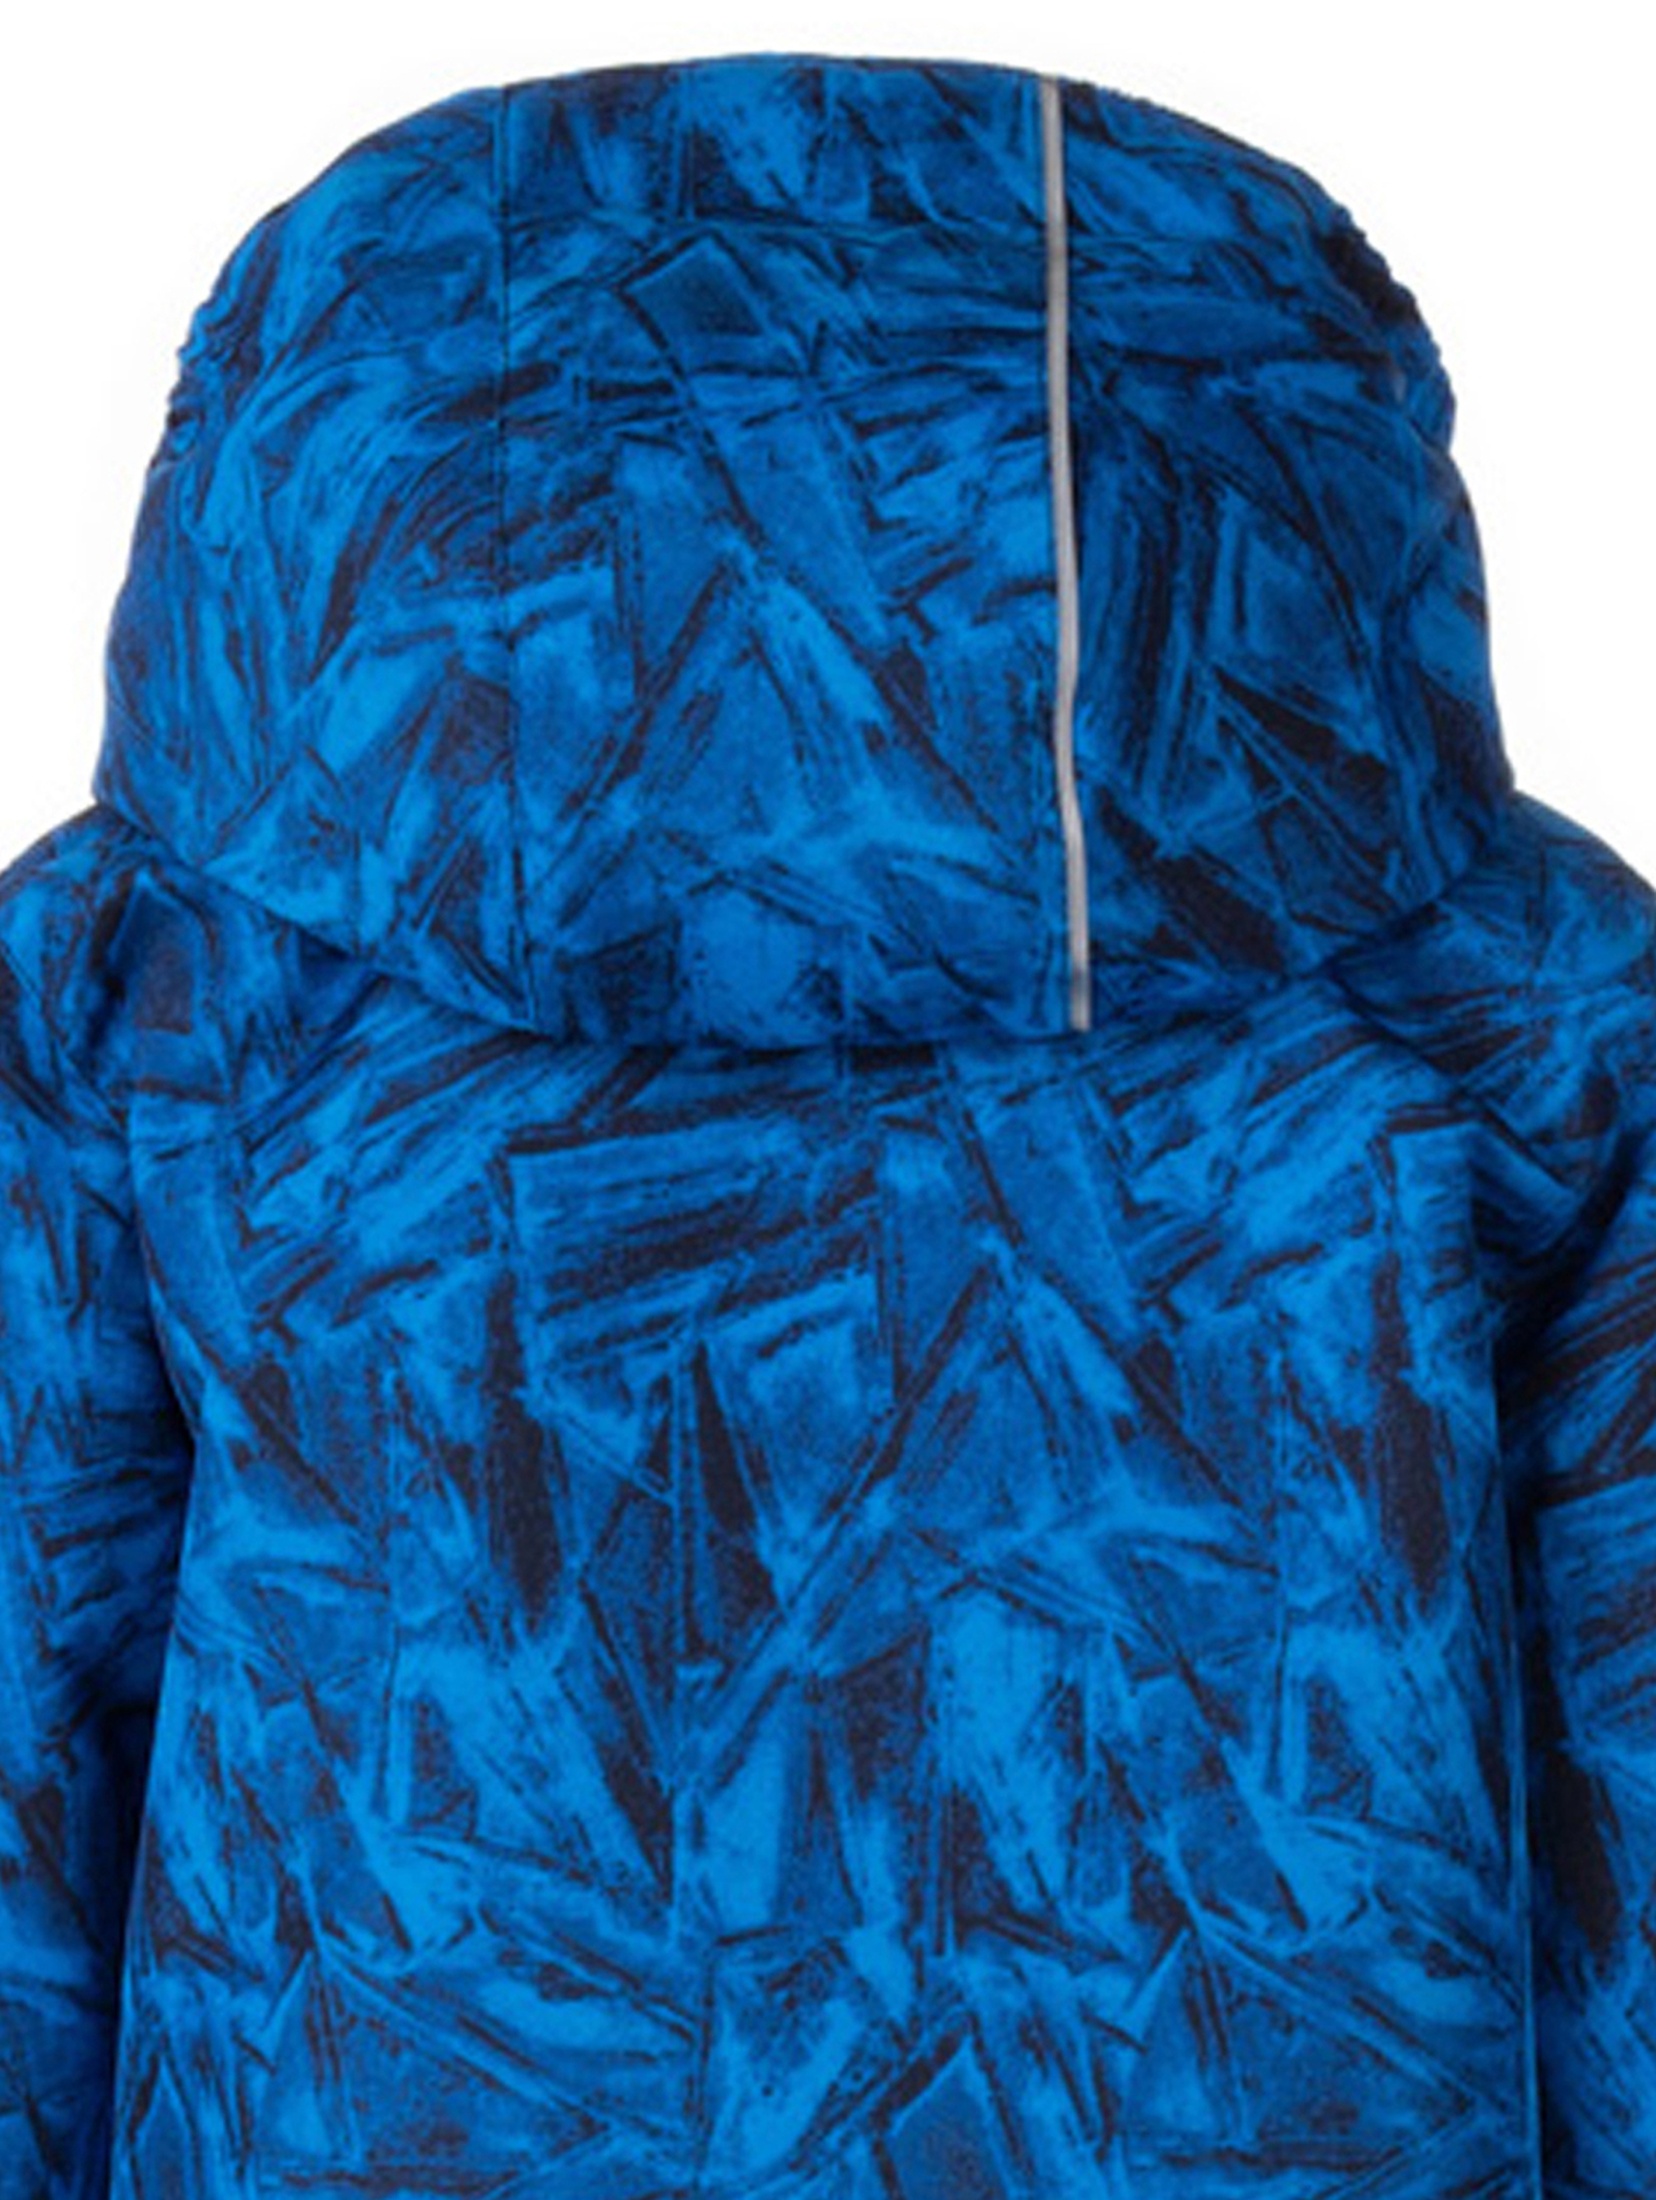 Komplet kurtka + spodnie RONIT w kolorze ciemnoniebieskim